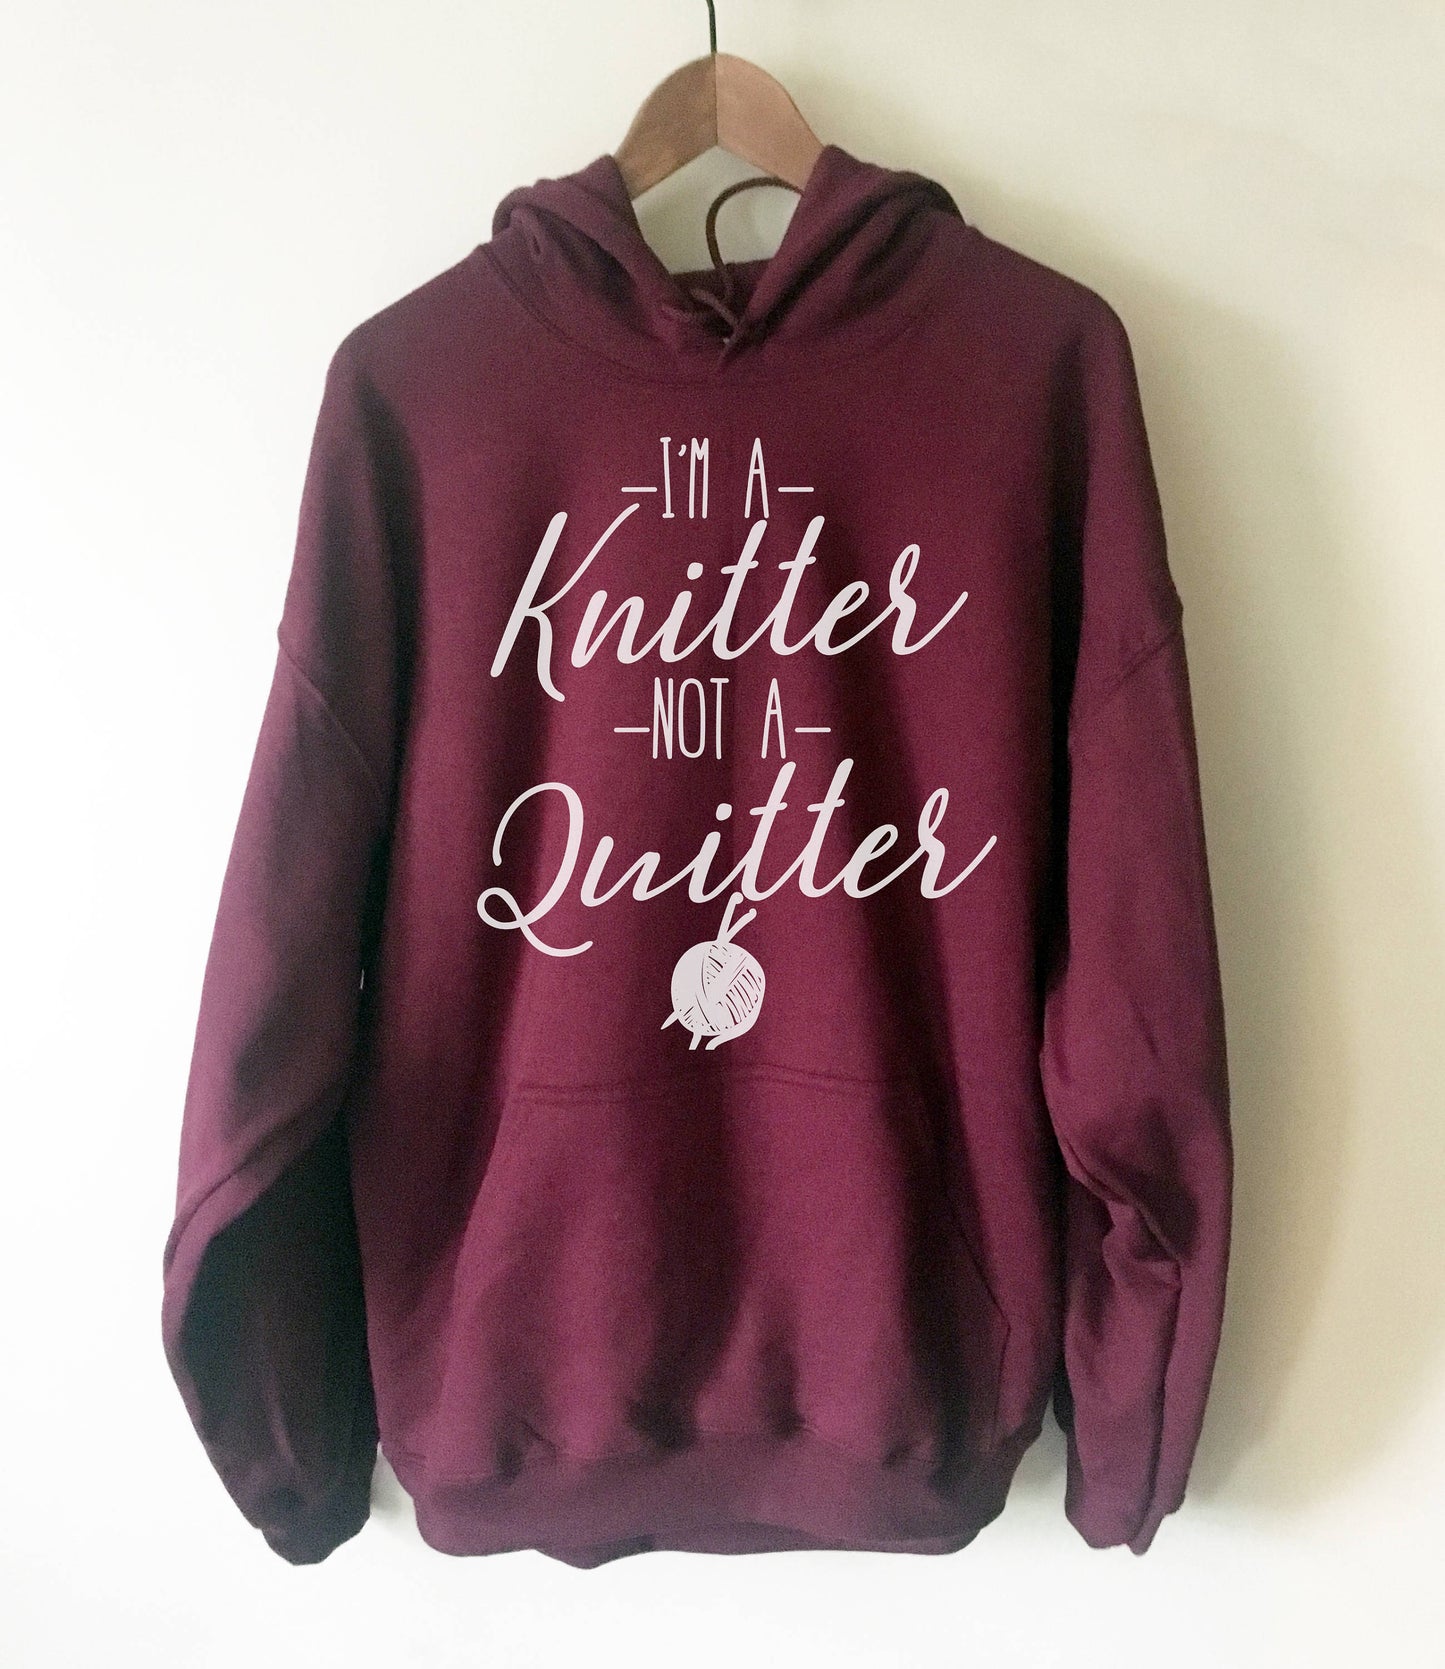 I'm A Knitter Not A Quitter Hoodie - Knitting shirt, Knitting gift, Knitter hoodie, Knitting gifts, gift for knitter, Crochet shirt